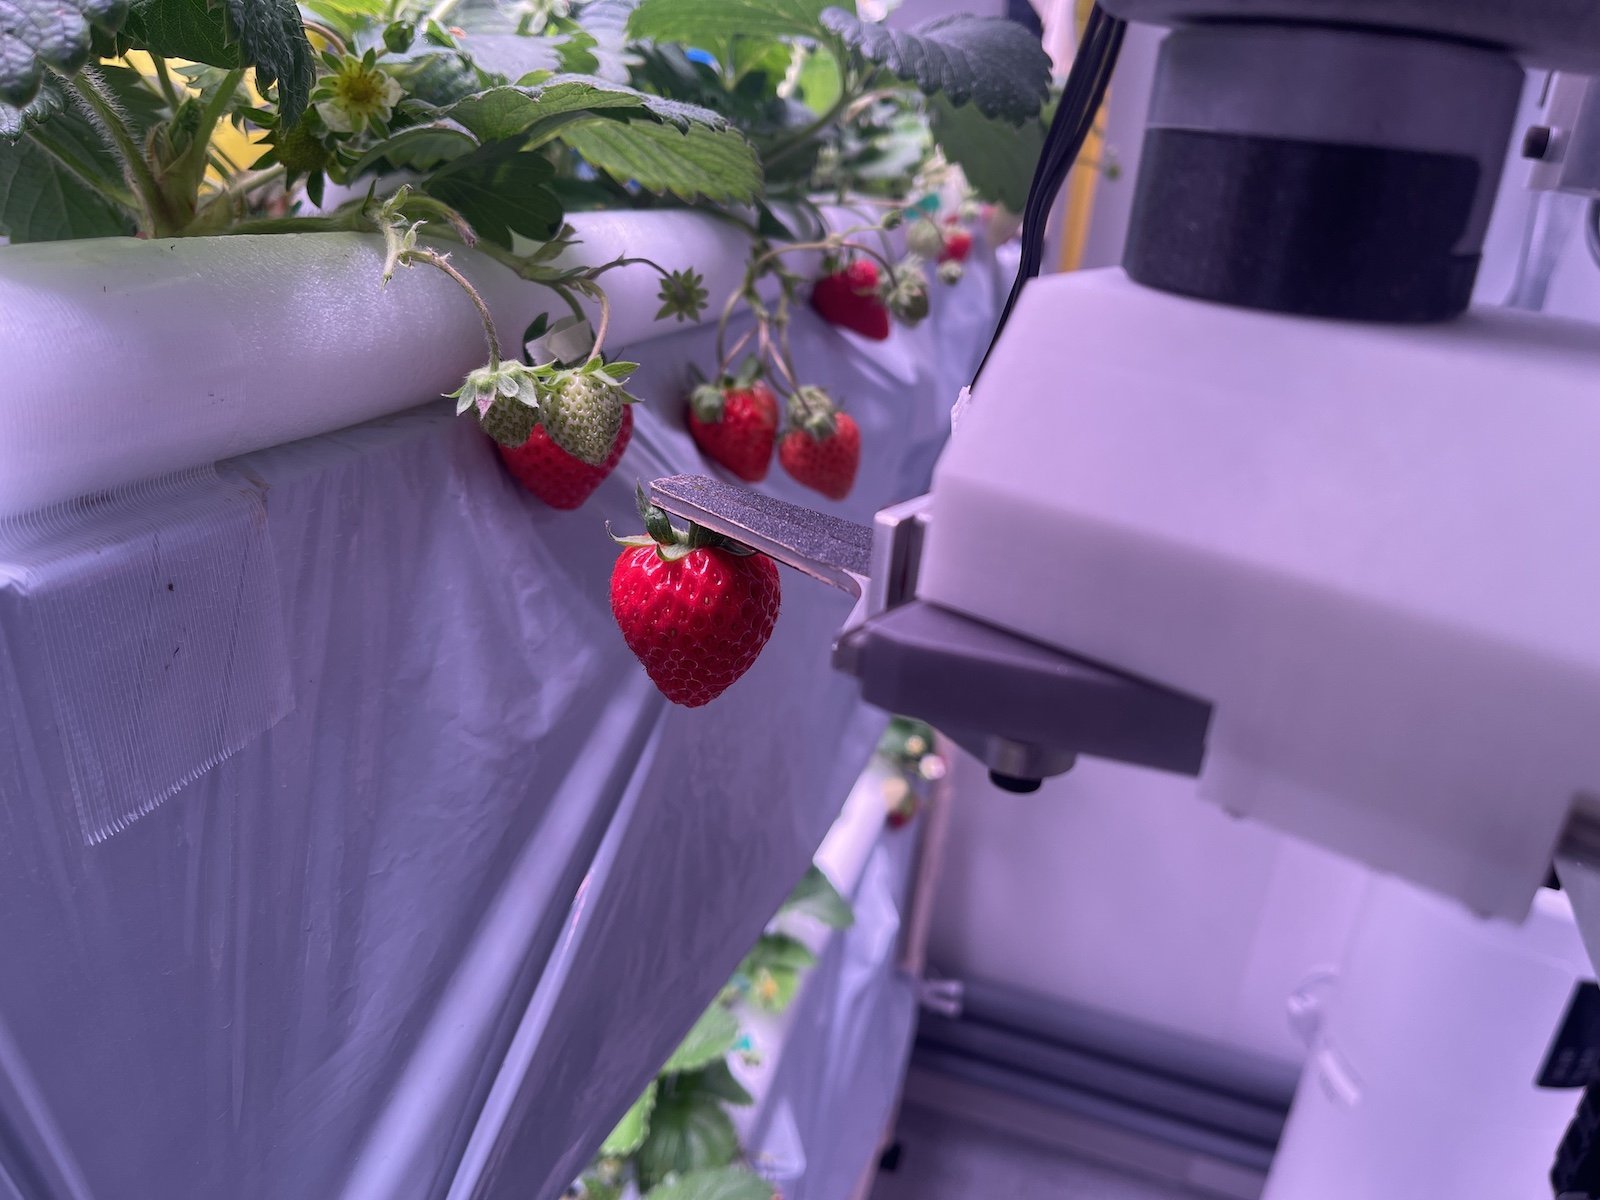 イチゴを収穫するロボットの様子